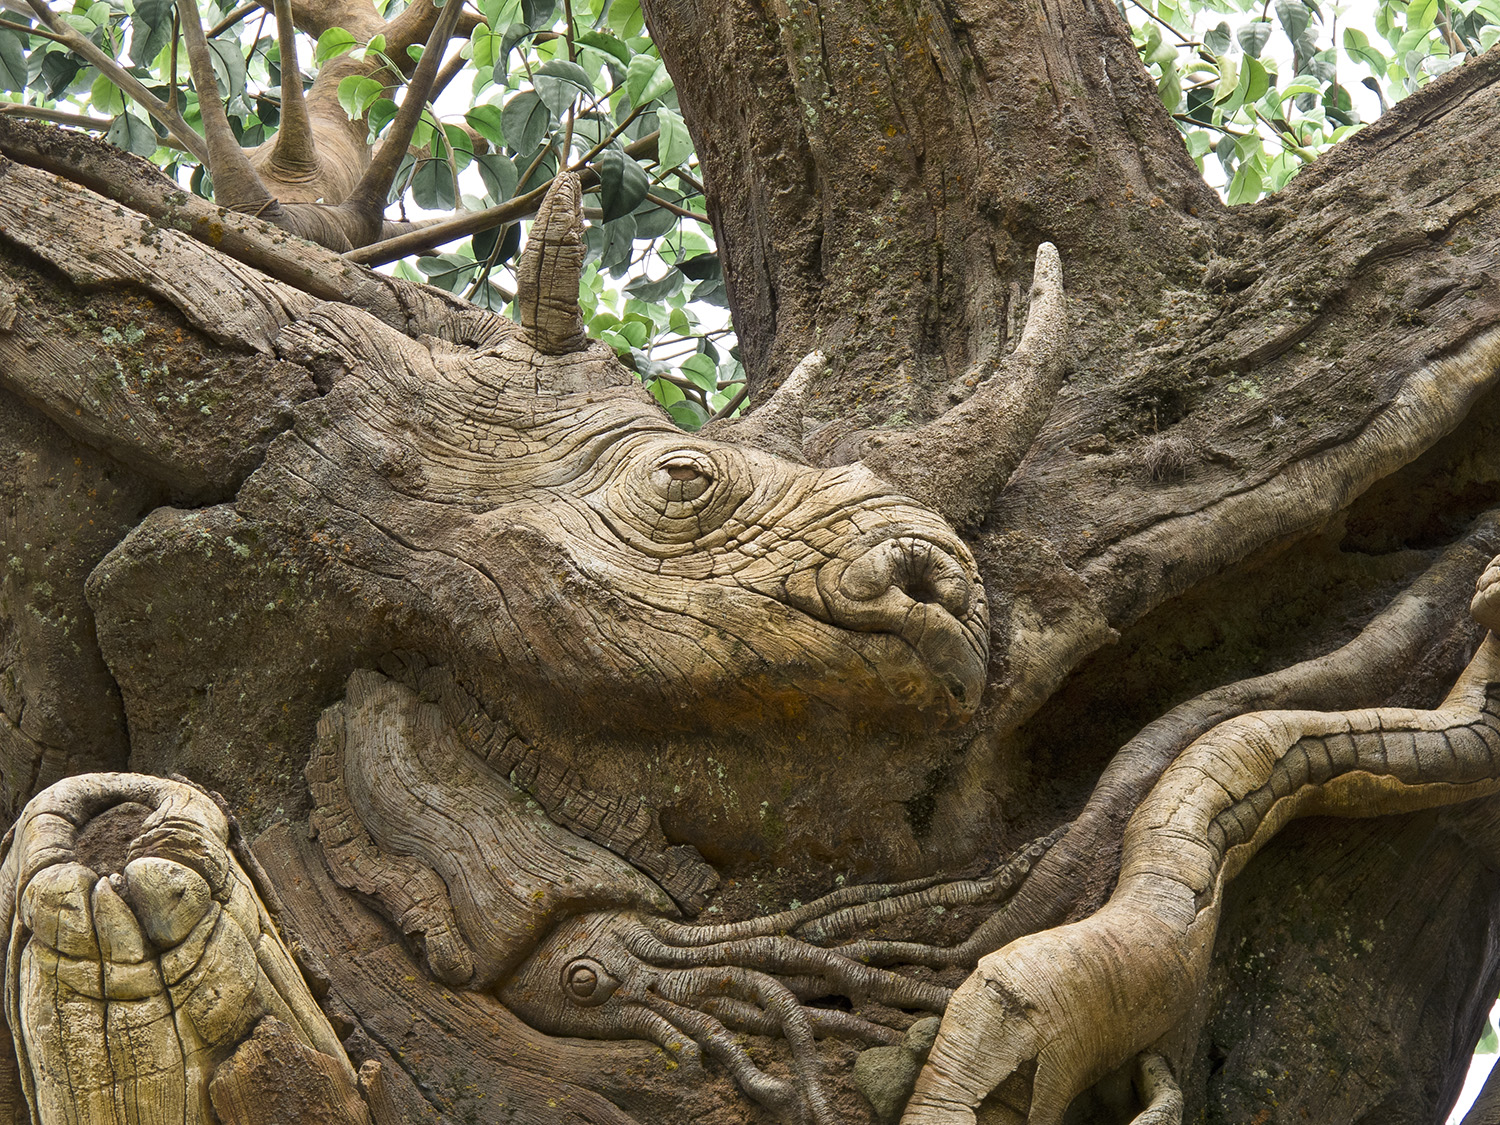 Animal Kingdom - Tree of Life